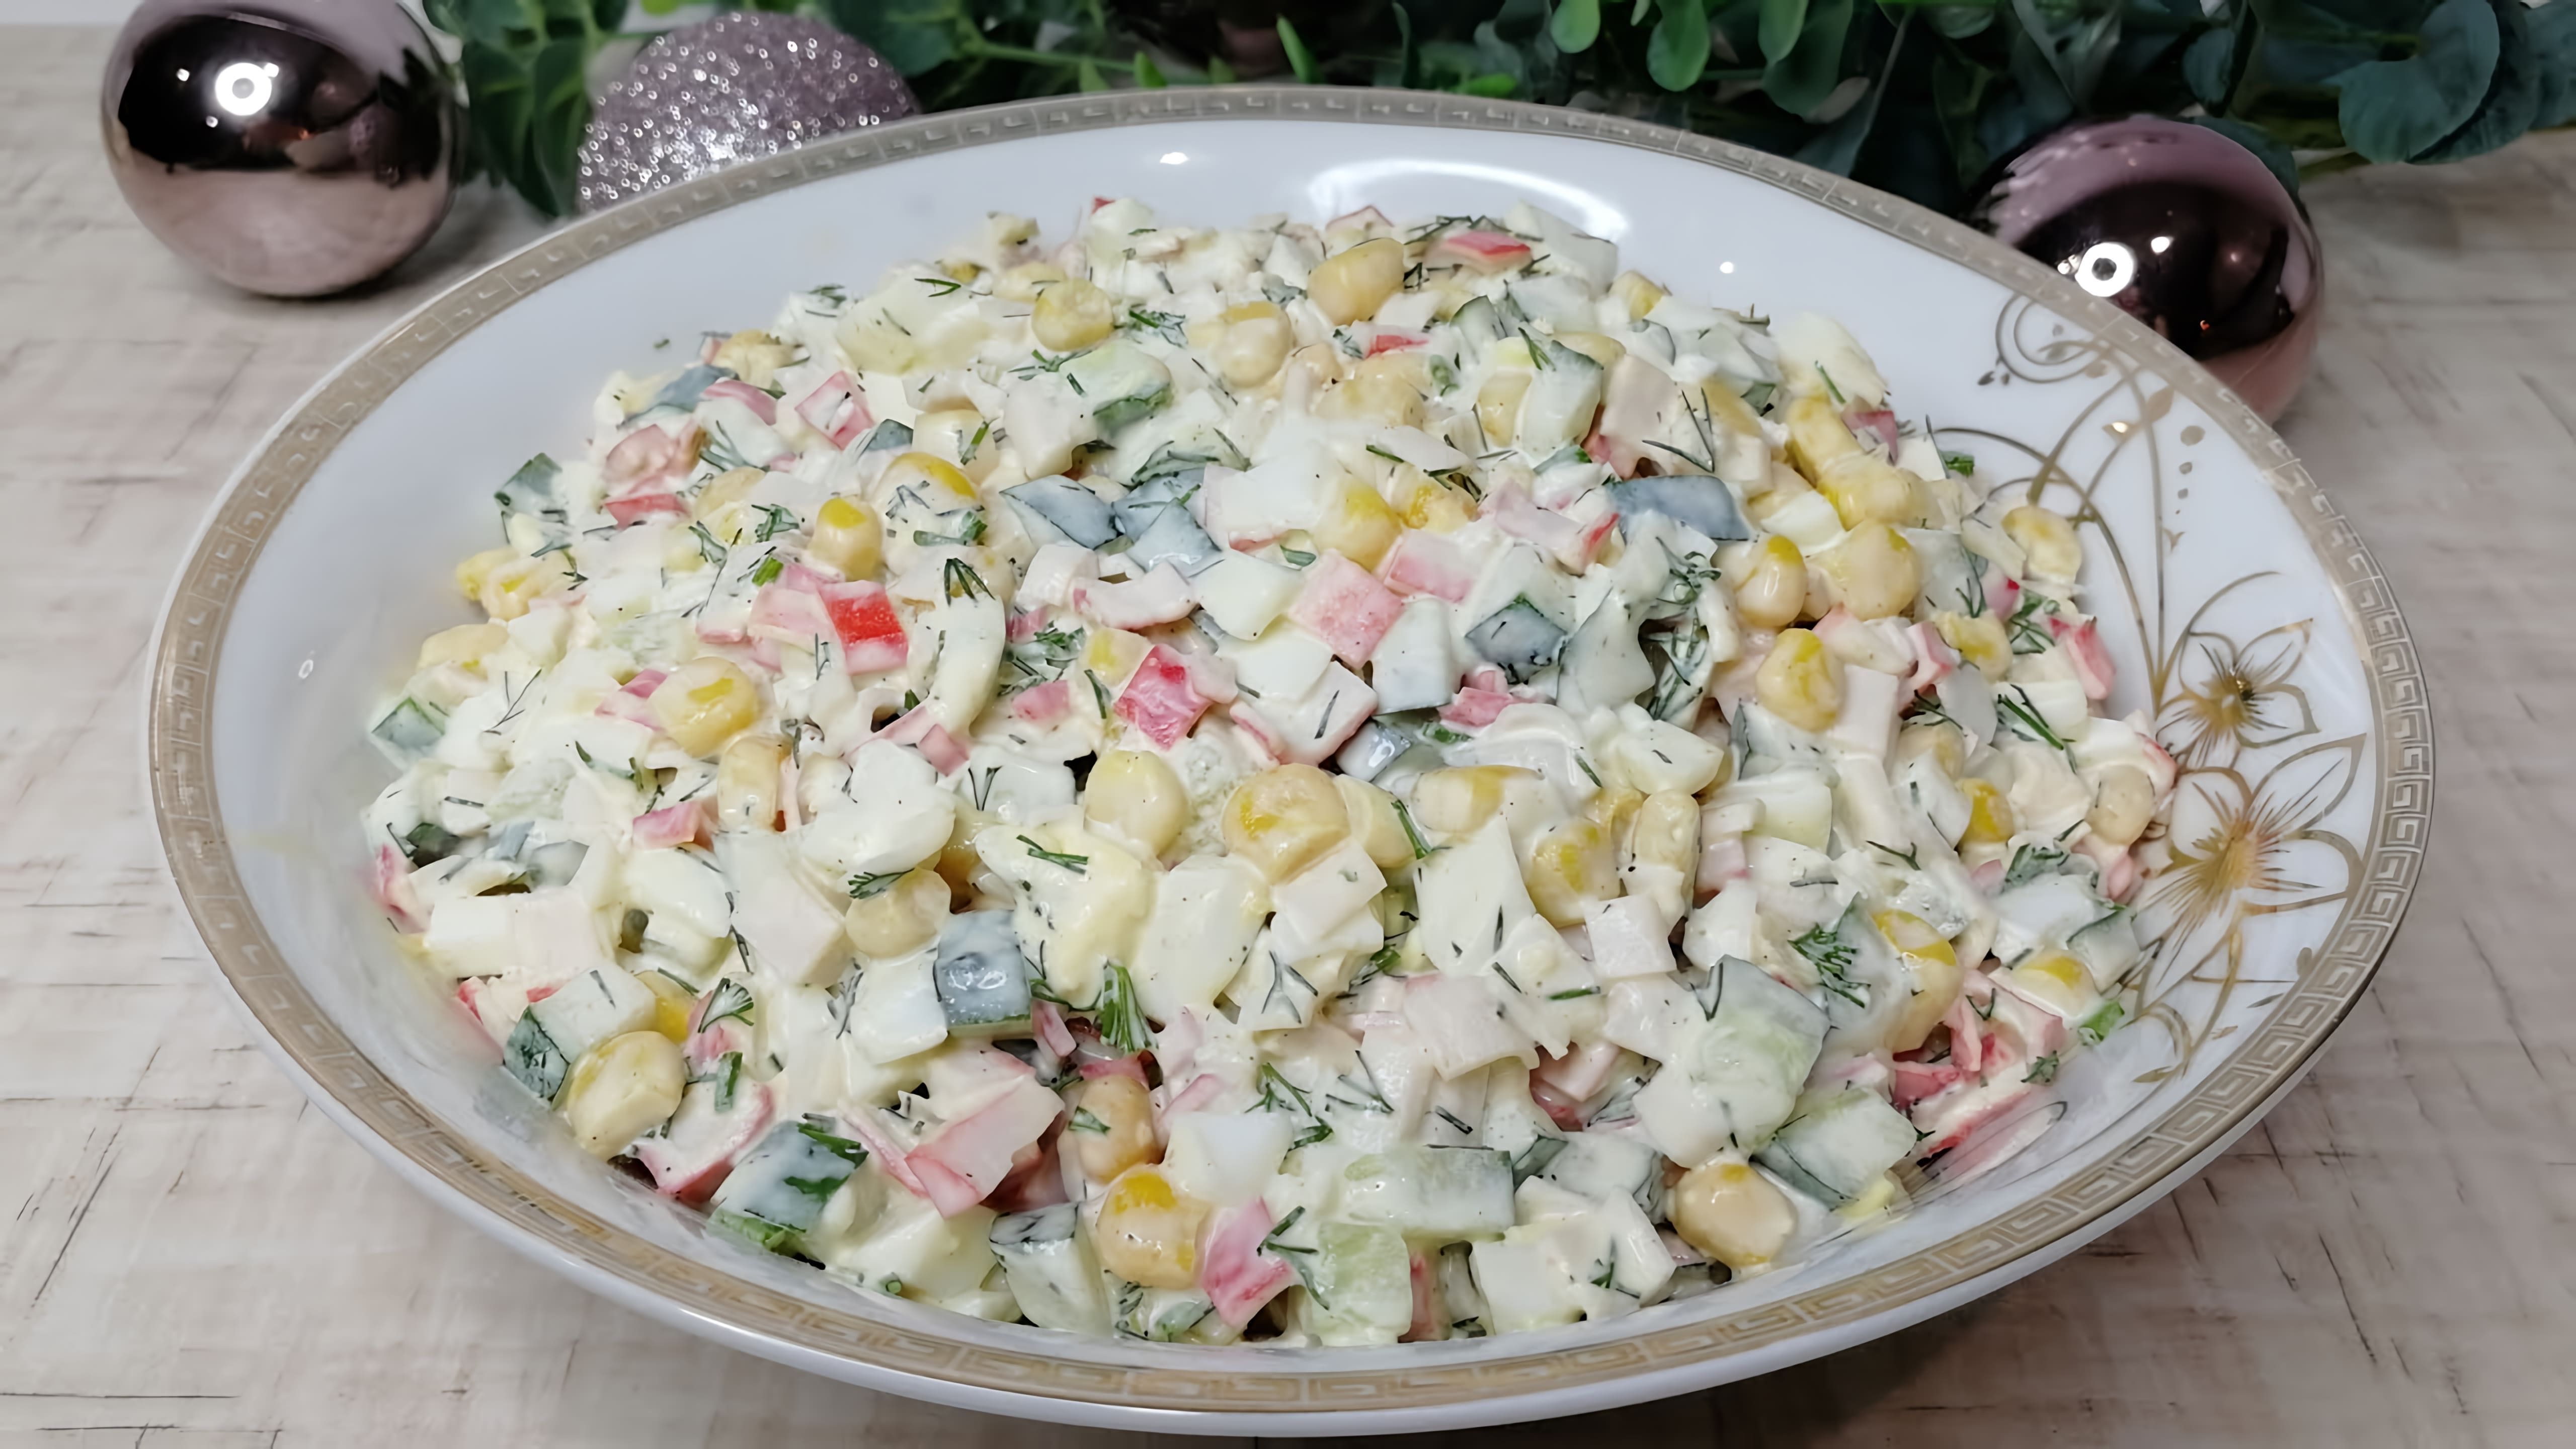 "Самый быстрый и вкусный салат из крабовых палочек" - это видео-ролик, который демонстрирует процесс приготовления простого, но вкусного салата из крабовых палочек